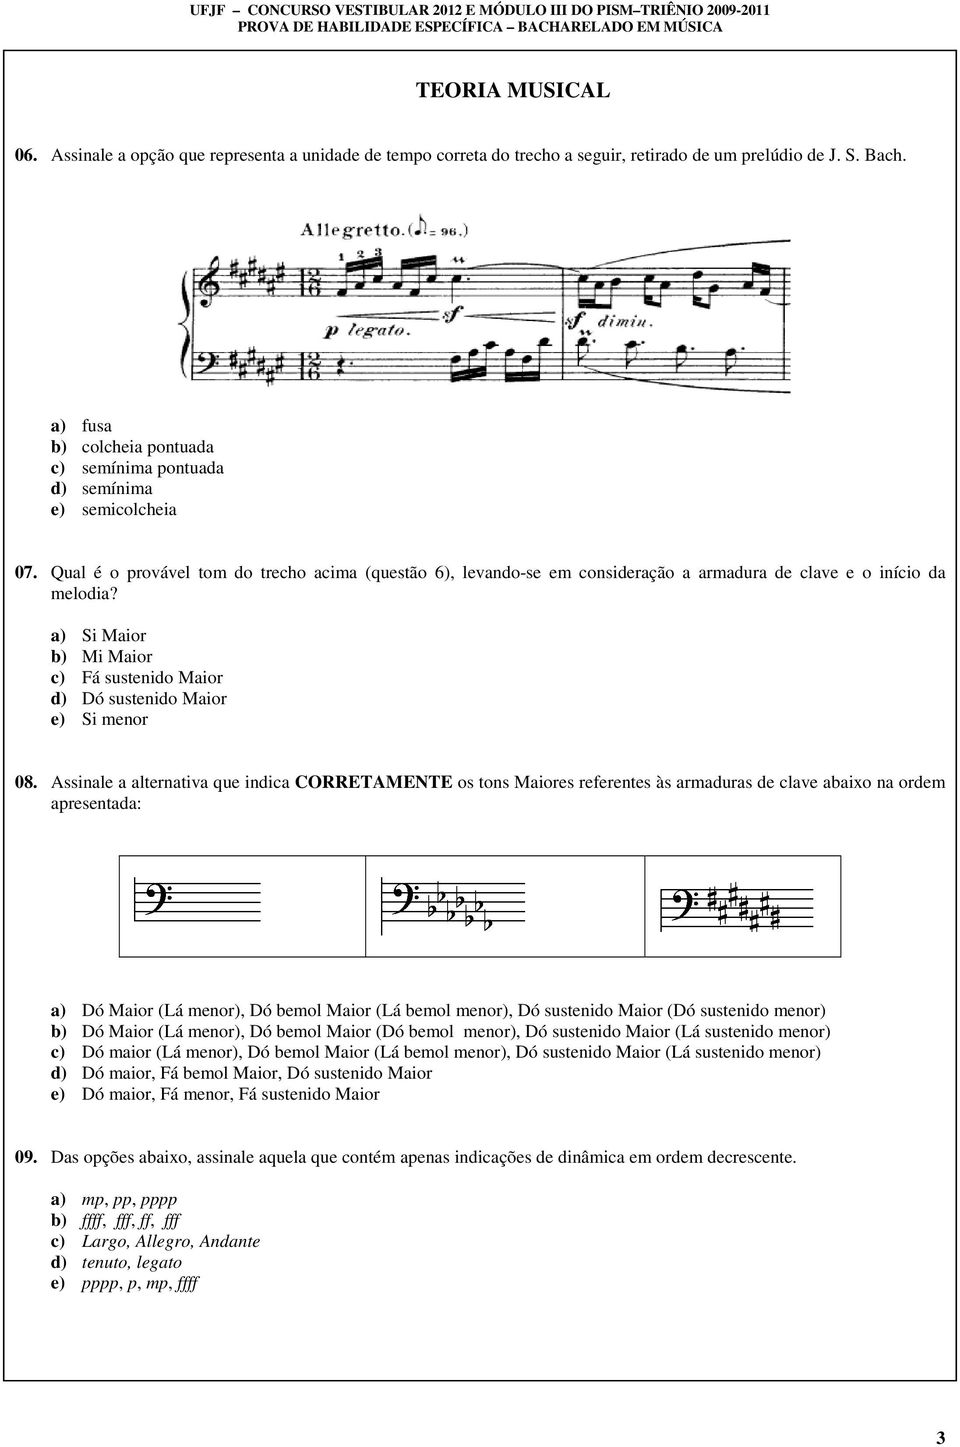 Qual é o provável tom do trecho acima (questão 6), levando-se em consideração a armadura de clave e o início da melodia?